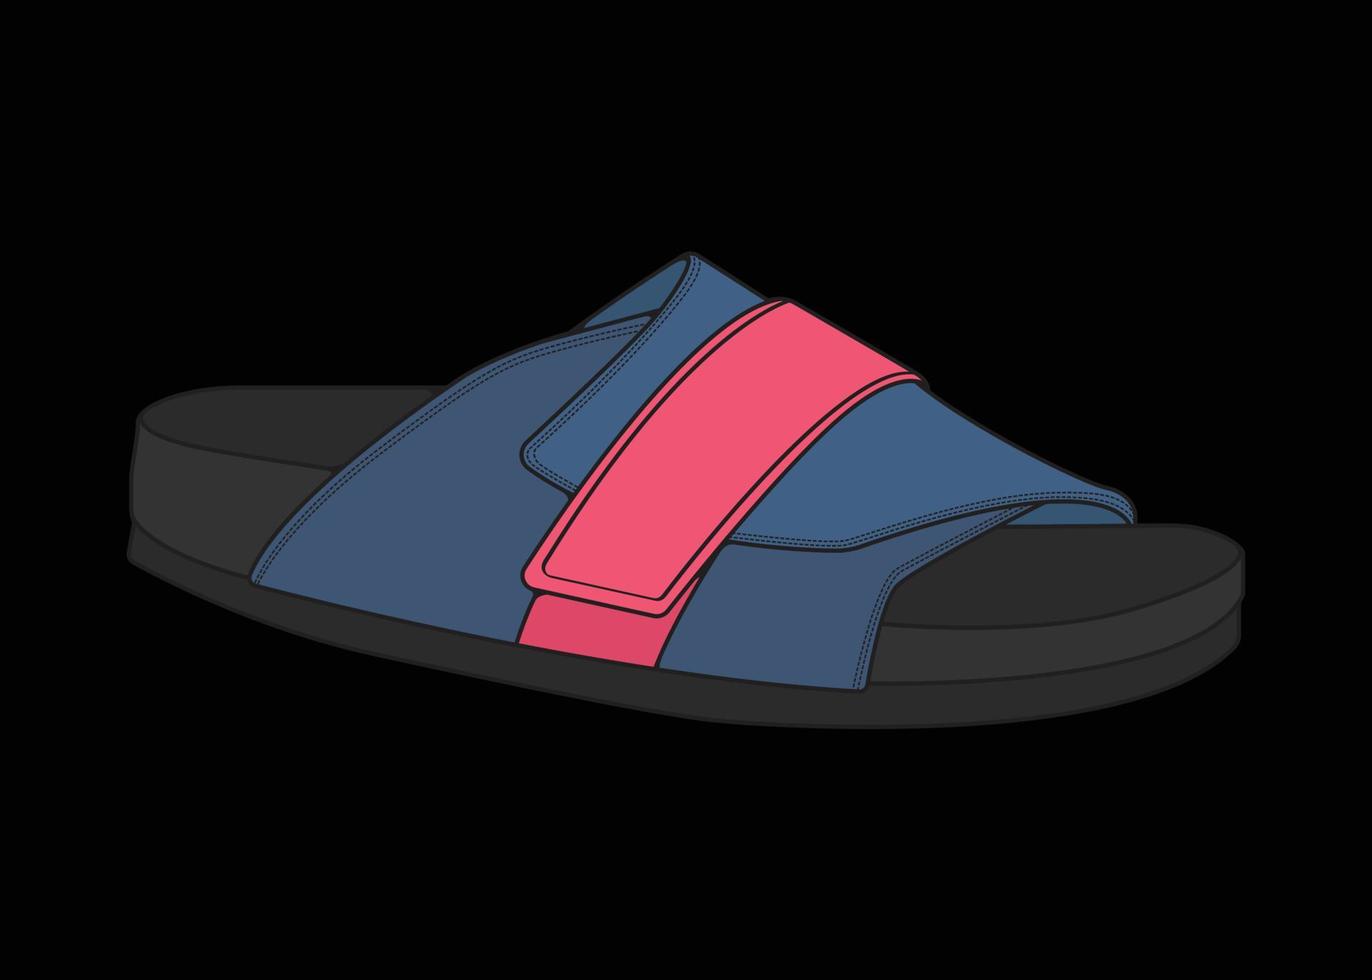 Sandale-Vektor-Illustration mit schwarzem Hintergrund. sommerschuh der sandalenkarikatur. vektor